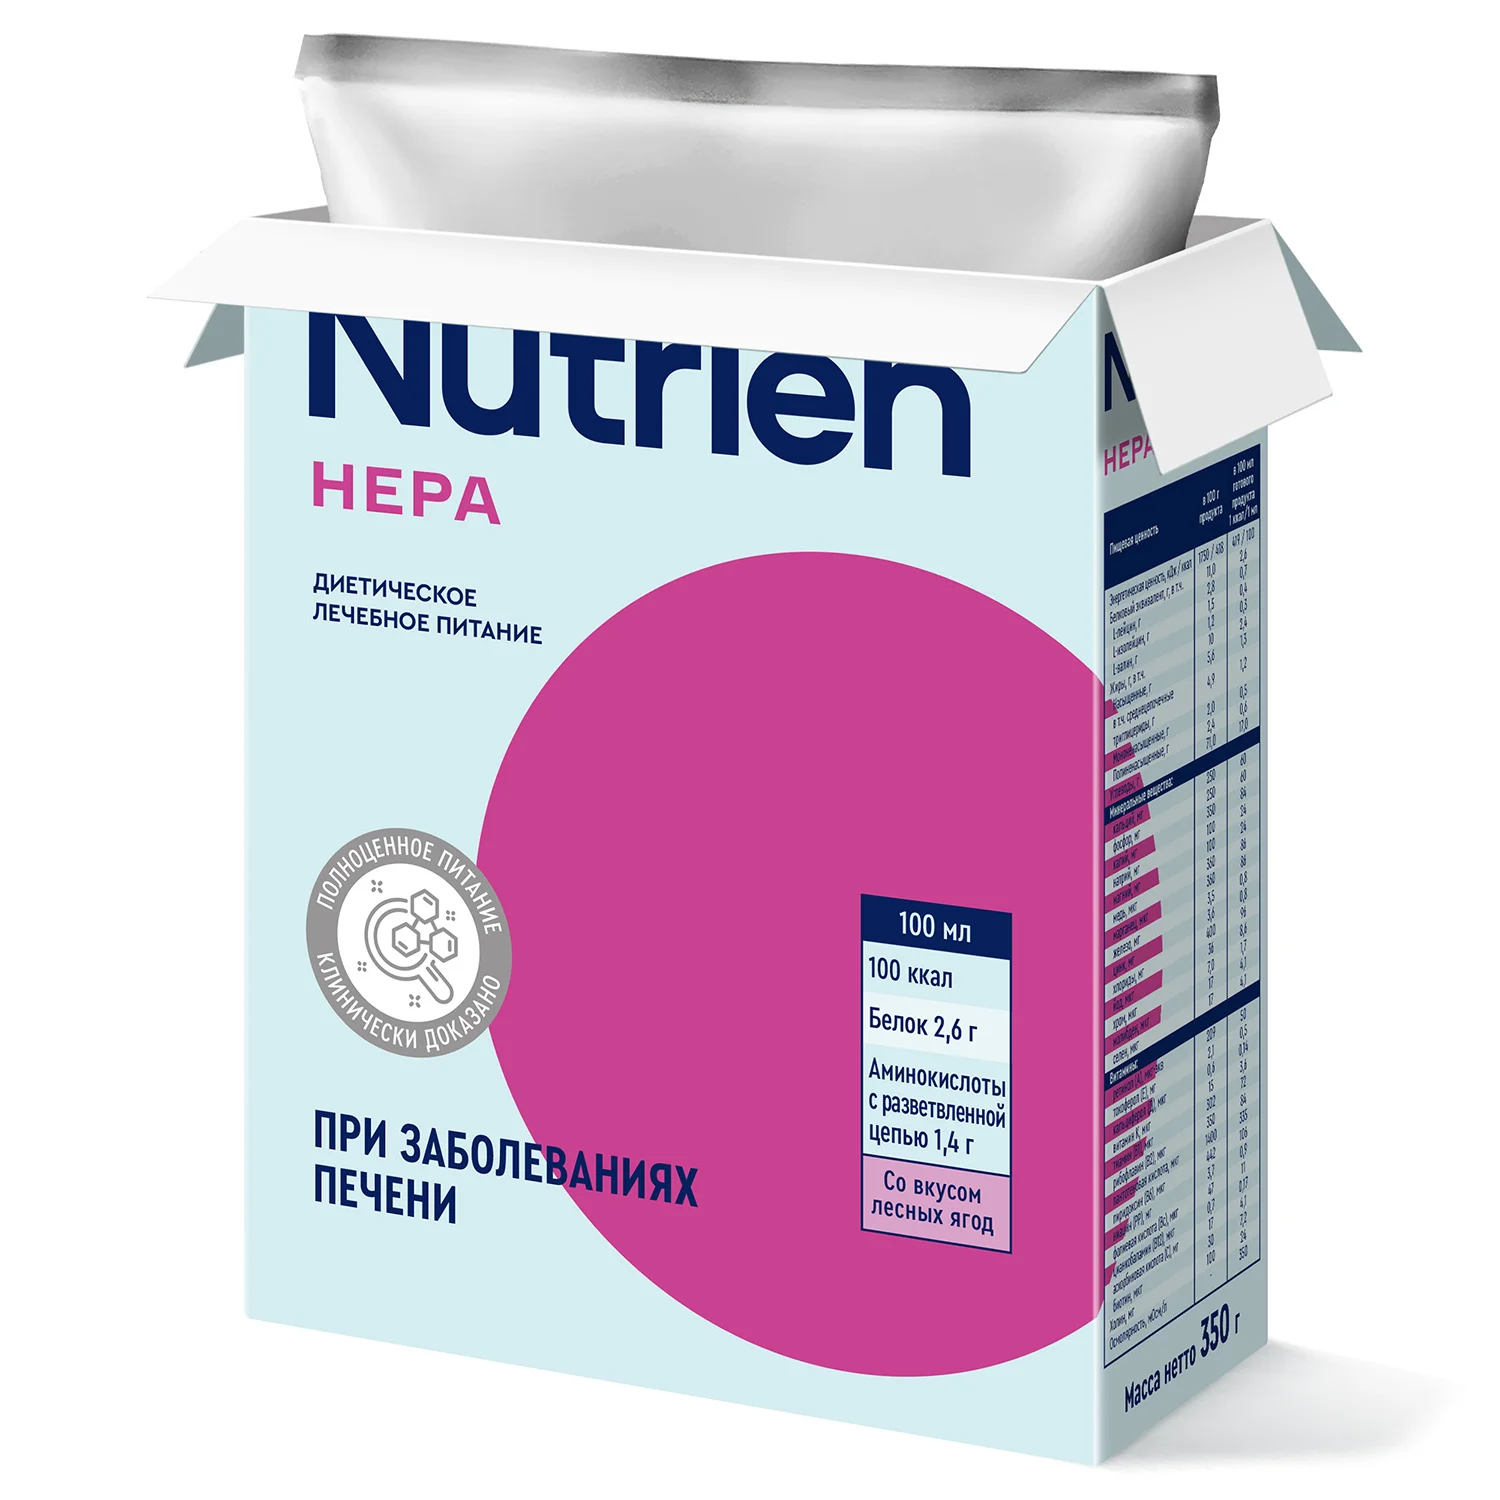 Nutrien Hepa - 18